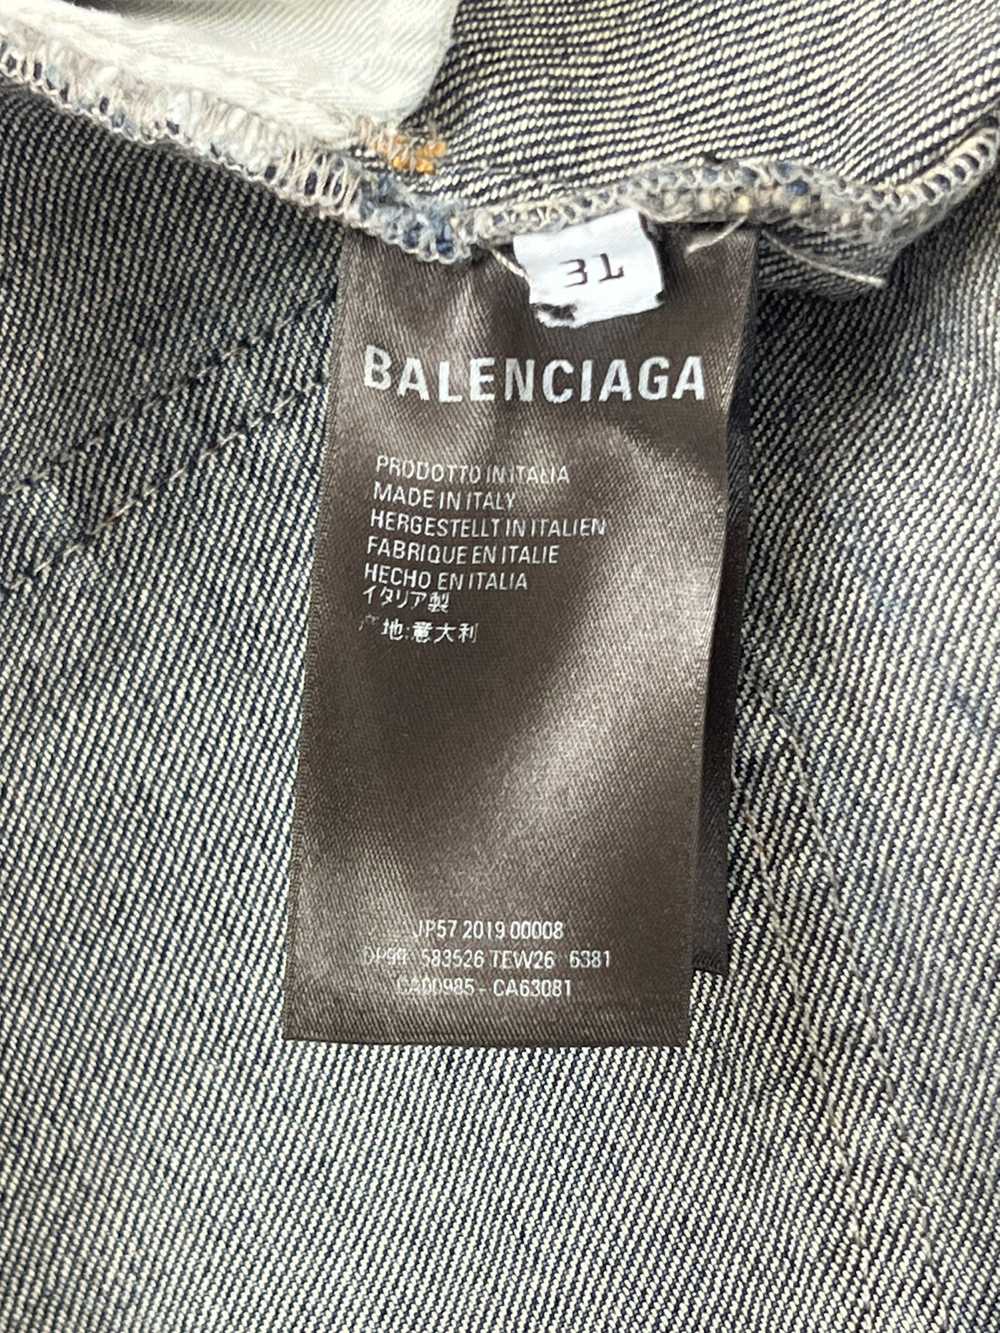 Balenciaga Balenciaga Distressed Jeans - image 11